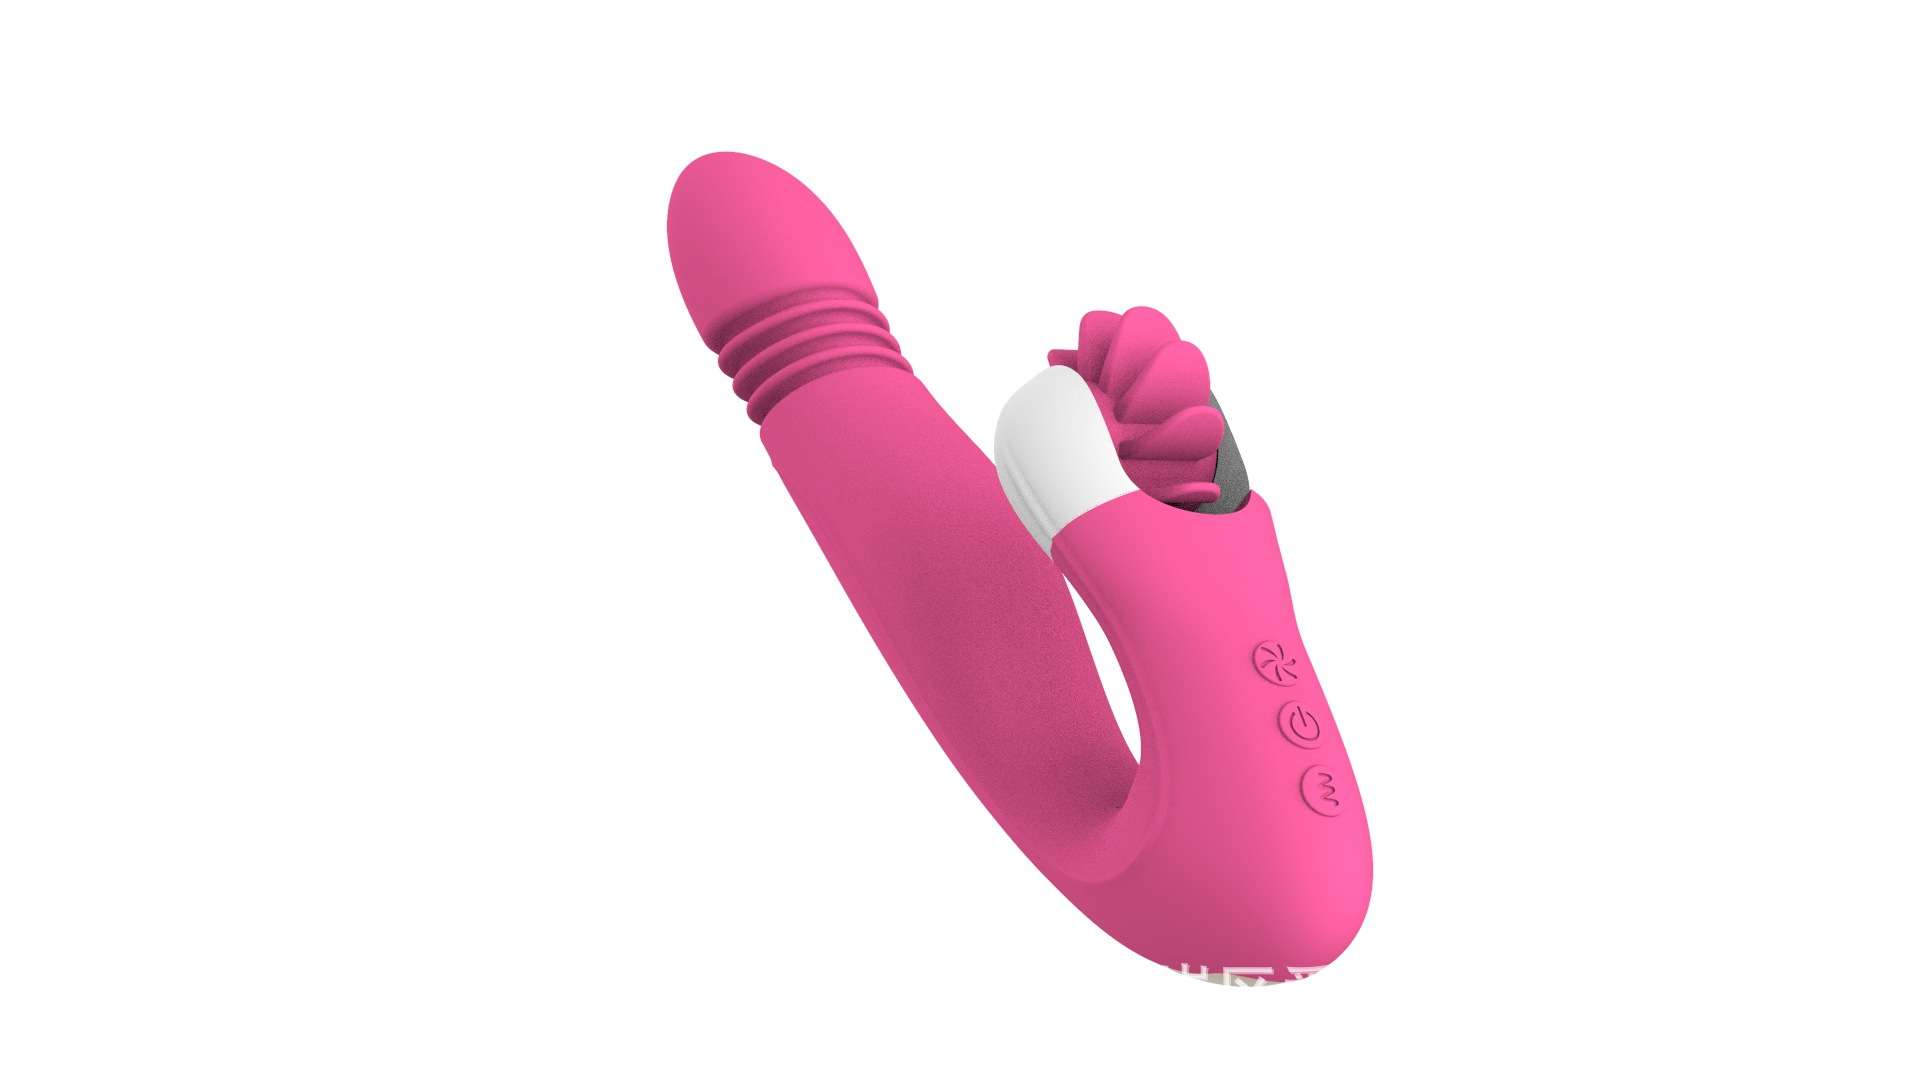 Dương vật giả Manokati kèm lưỡi liếm – DVCT439 | đồ chơi người lớn máy rung tình dục đa năng